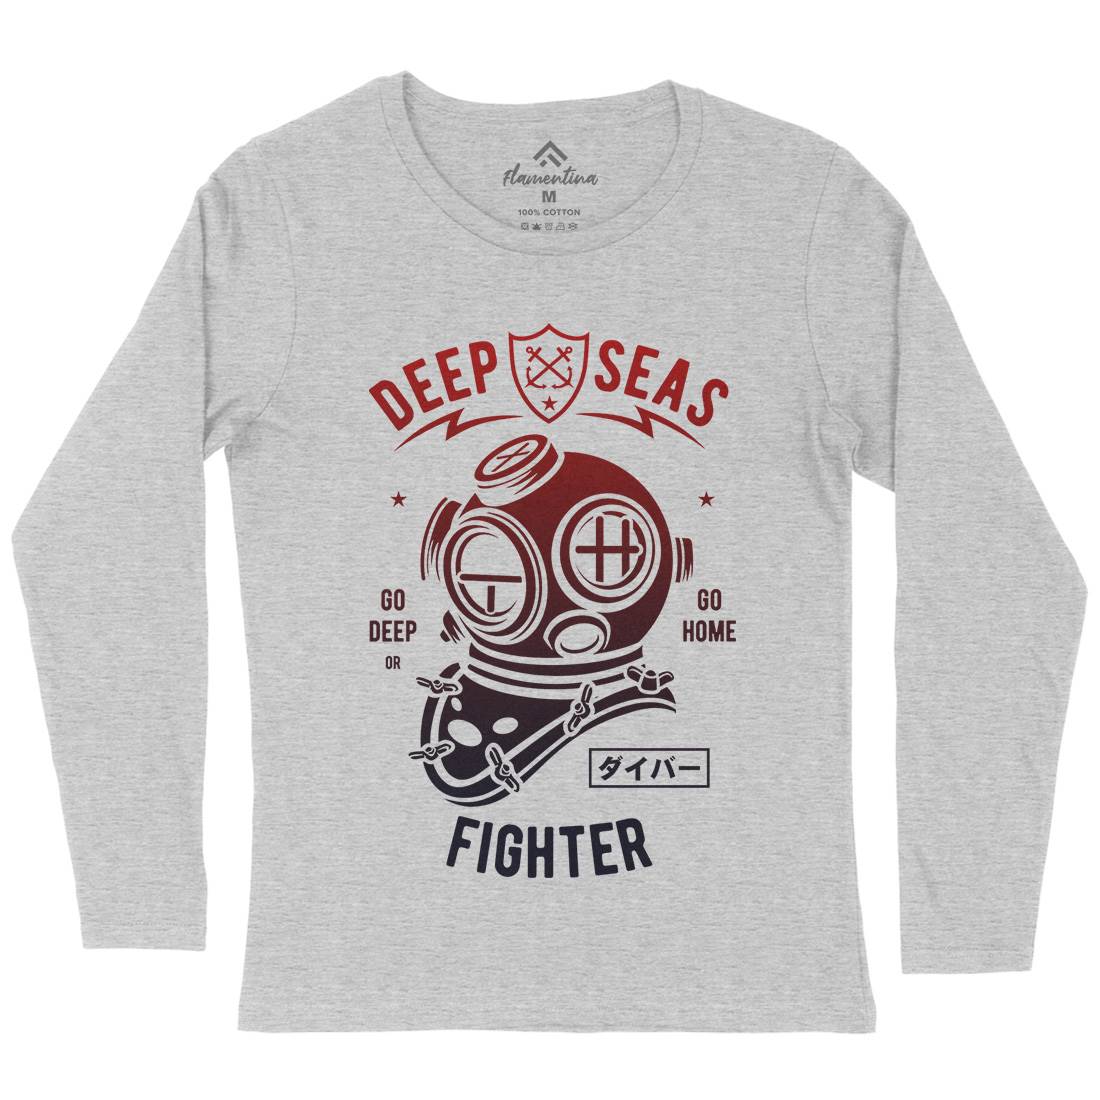 Deep Seas Fighter Womens Long Sleeve T-Shirt Navy A223